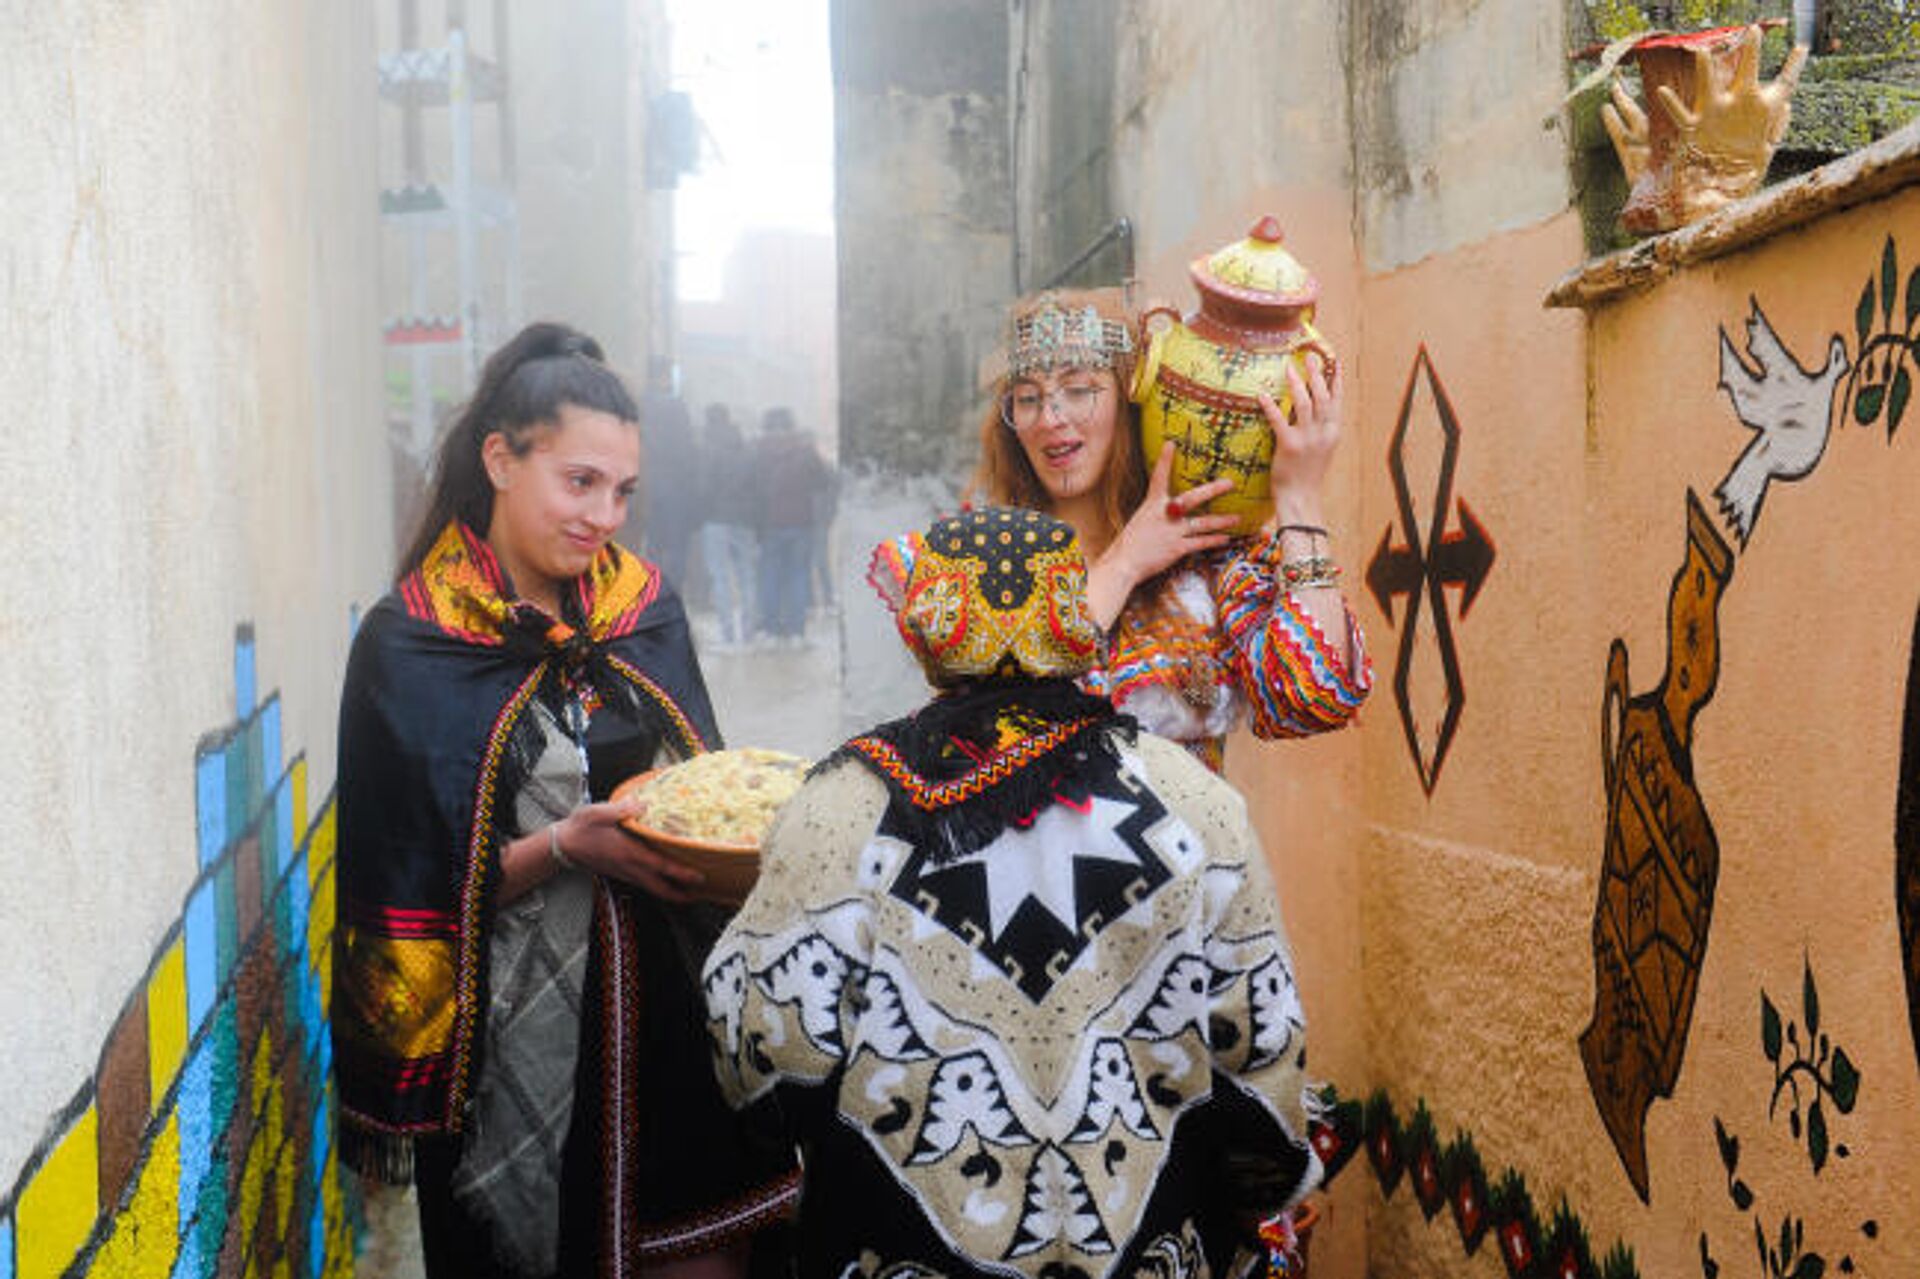 Amazig takvimine göre 2972 yılına girişi kutlayan Berberiler, bugünün Fas'ta resmi tatil olmasını istiyor. - Sputnik Türkiye, 1920, 13.01.2022